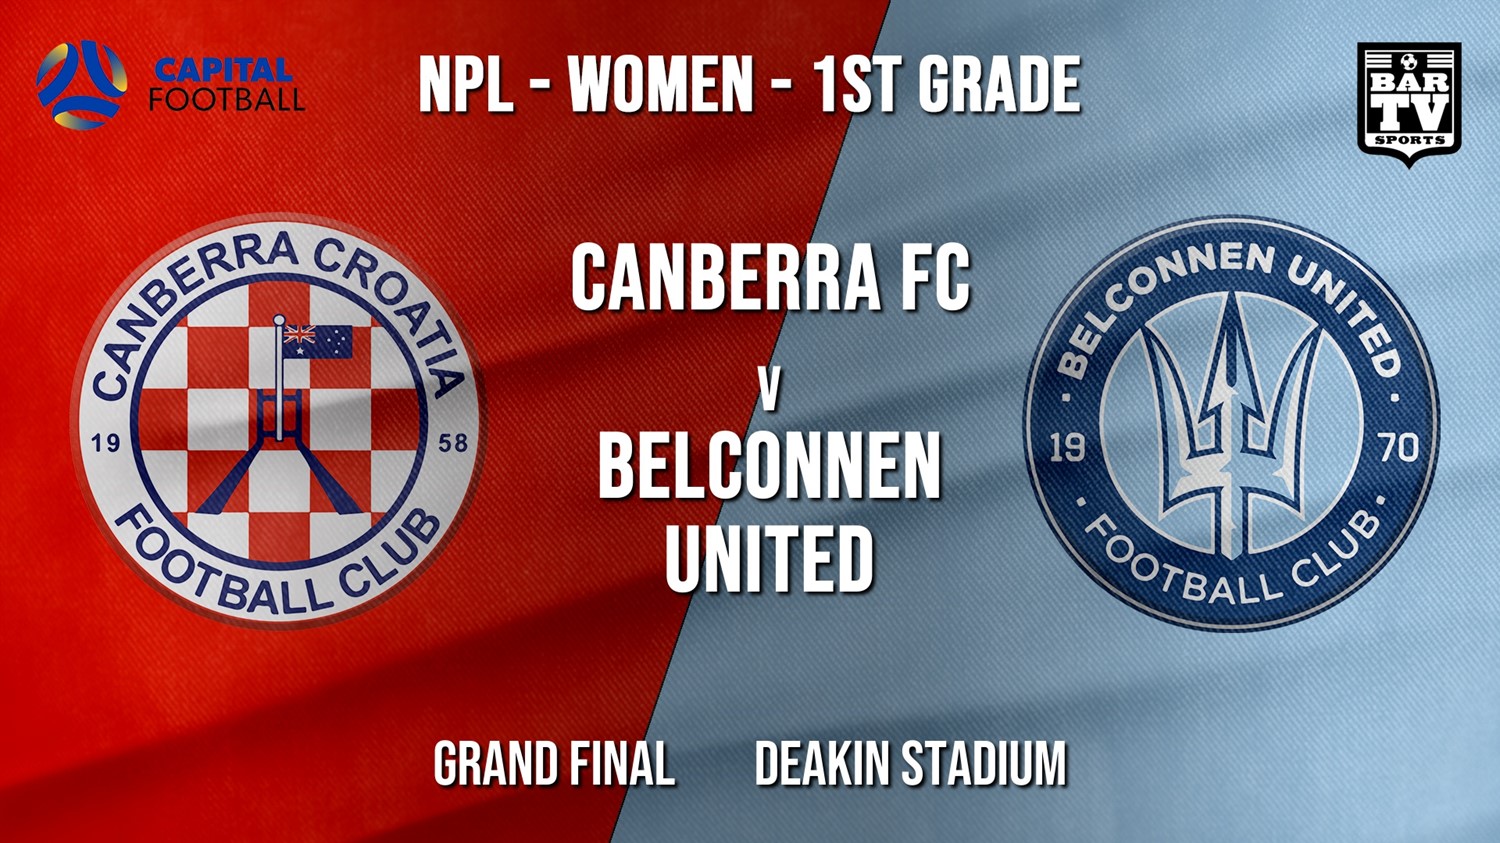 NPL Women - 1st Grade - Capital Football Finals Grand Final - Canberra FC (women) v Belconnen United (women) Minigame Slate Image